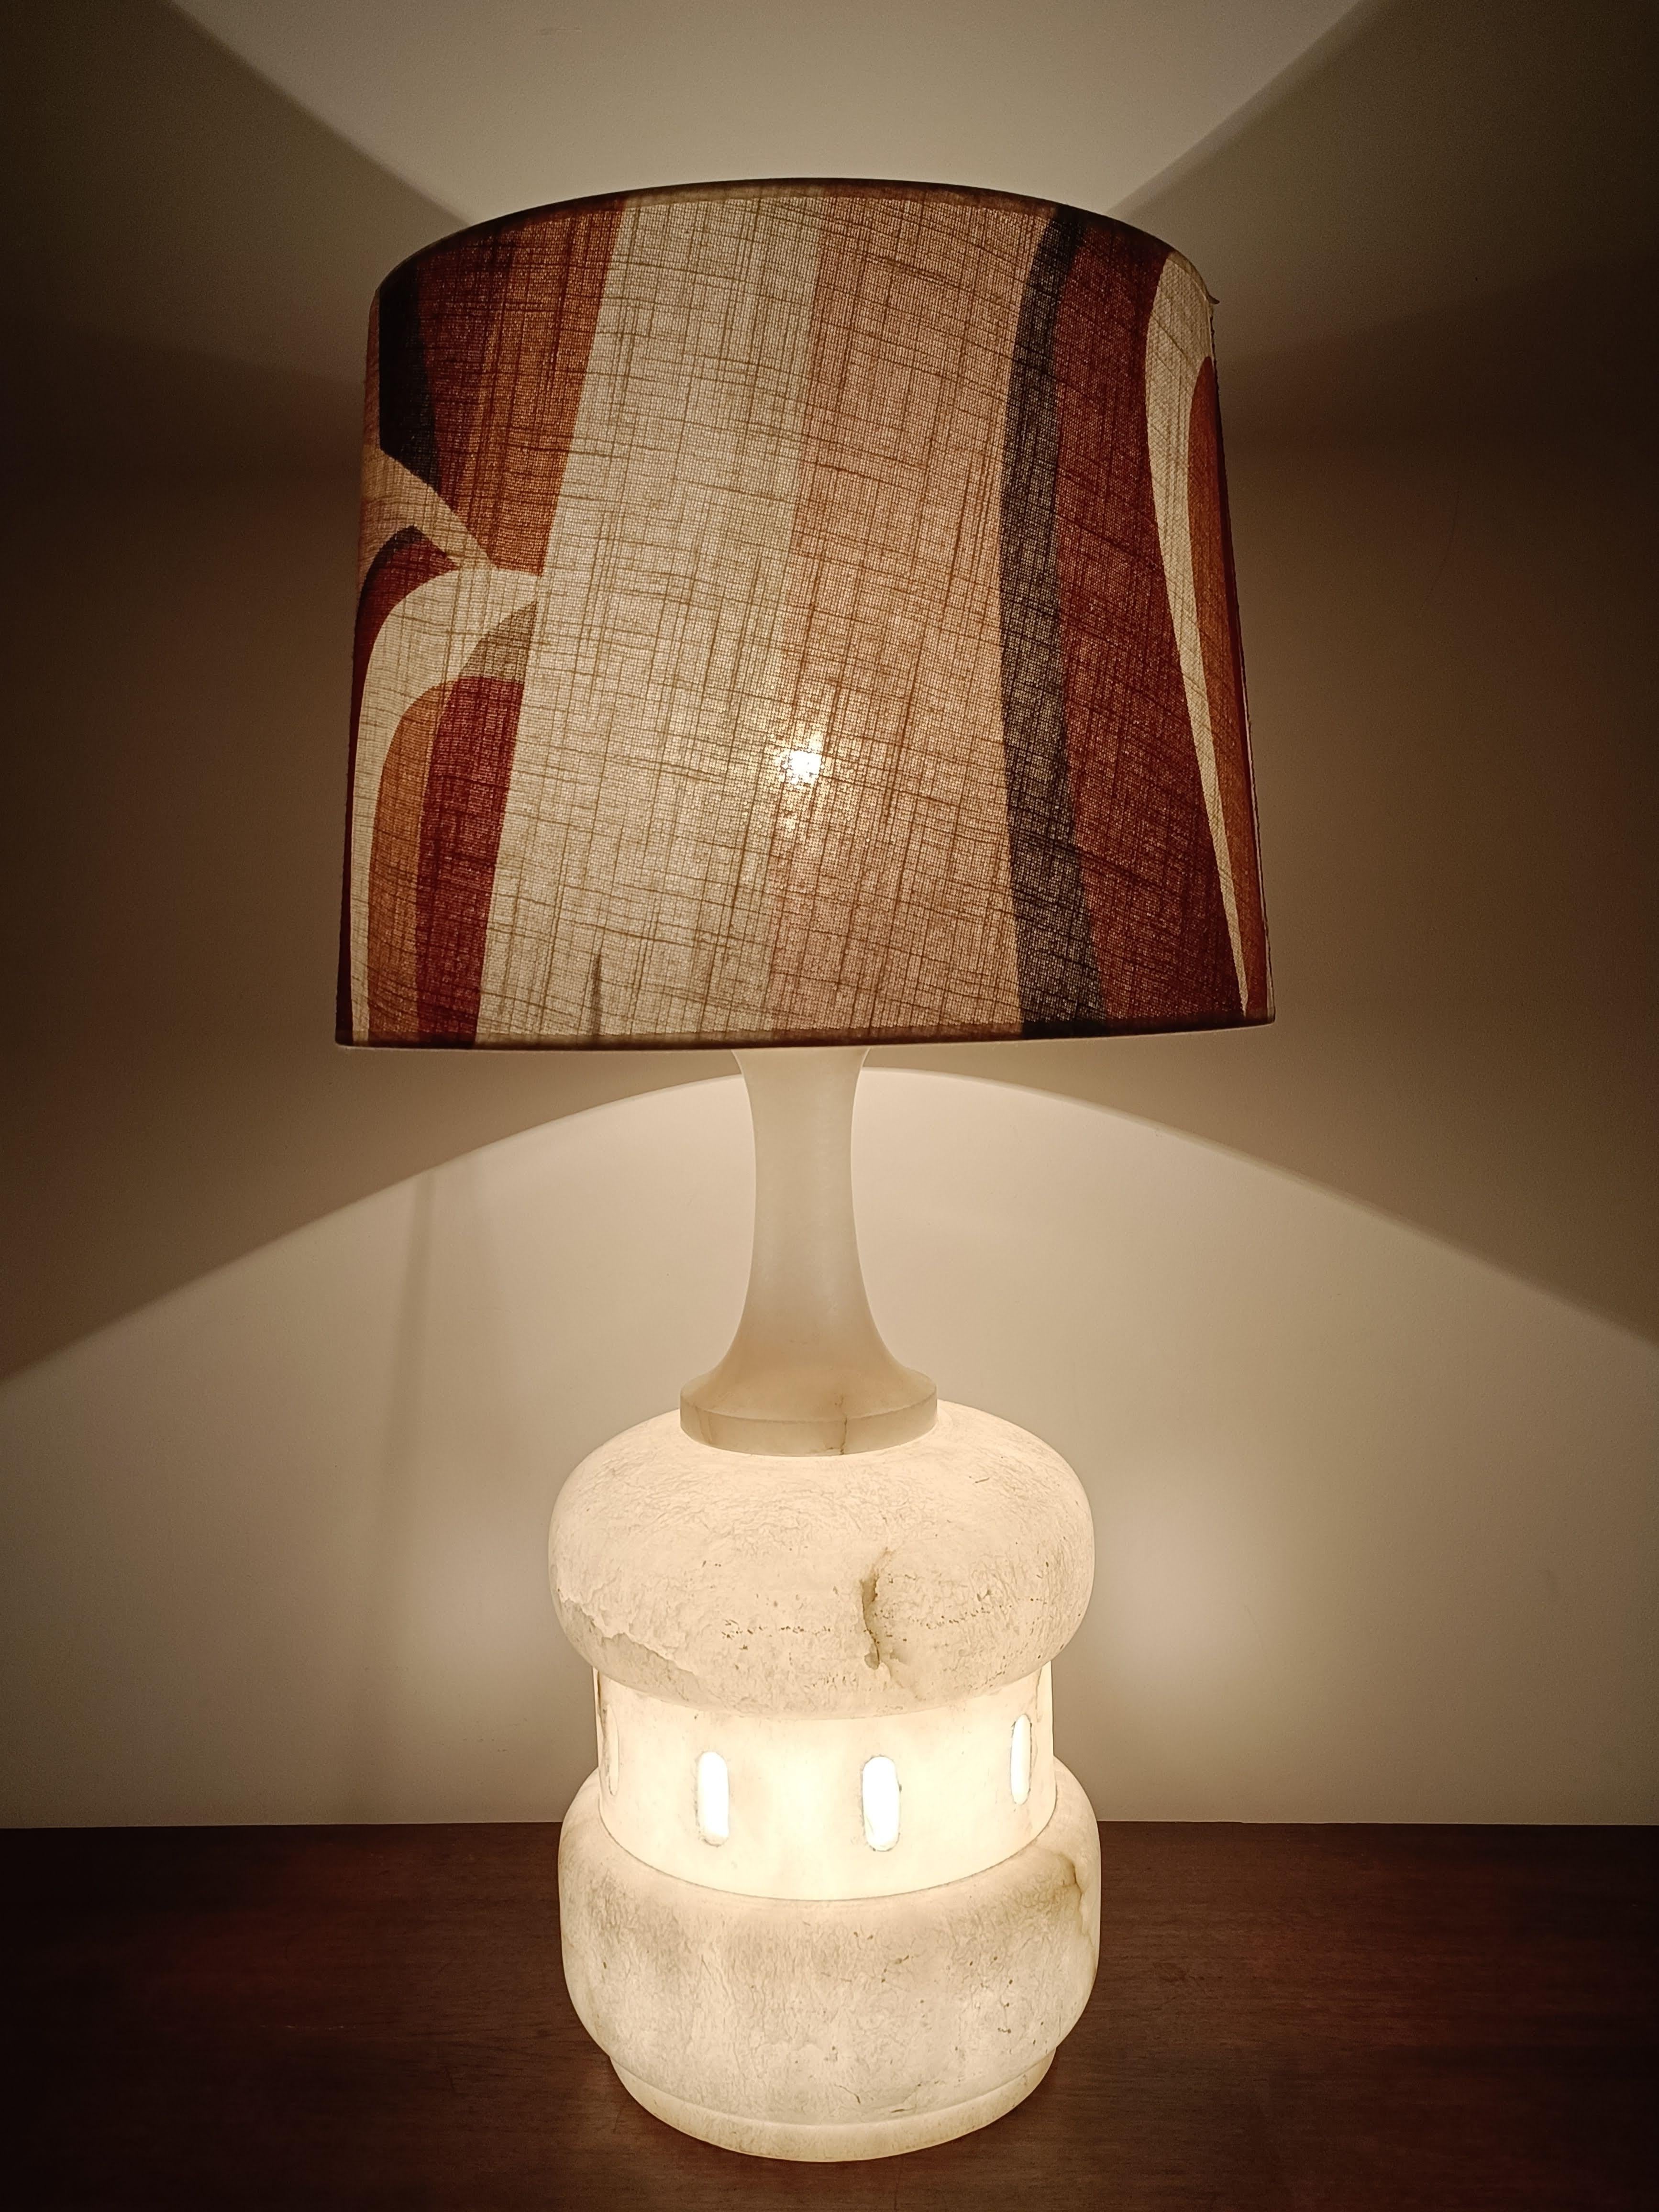 Superbe lampe italienne en albâtre avec abat-jour en lin personnalisé de fabrication Kohroitaly
.
Dimensions :
Hauteur totale de la lampe : 77 cm
Hauteur de l'abat-jour : 30 cm
Diamètre de l'abat-jour : 40 cm
Diamètre de la base de la lampe : 26